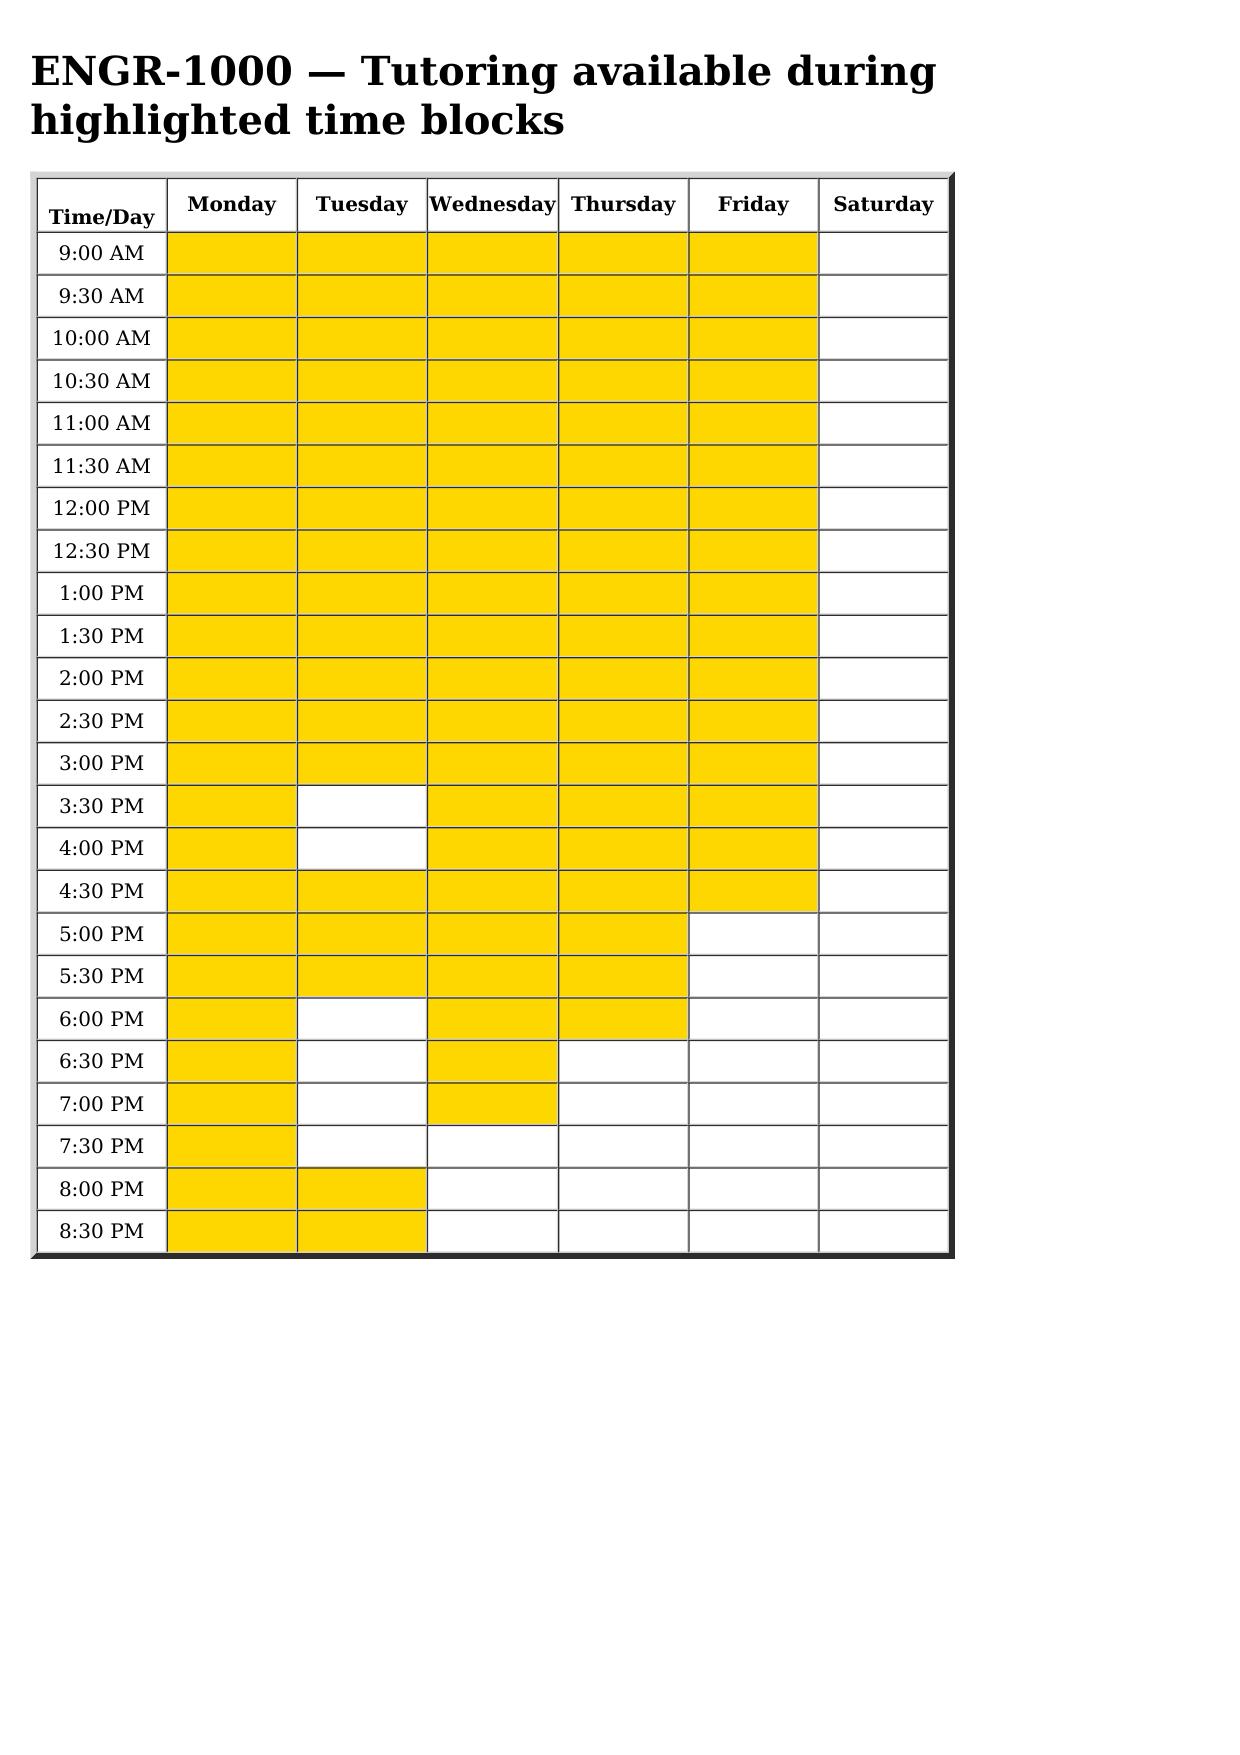 engr 1000 schedule